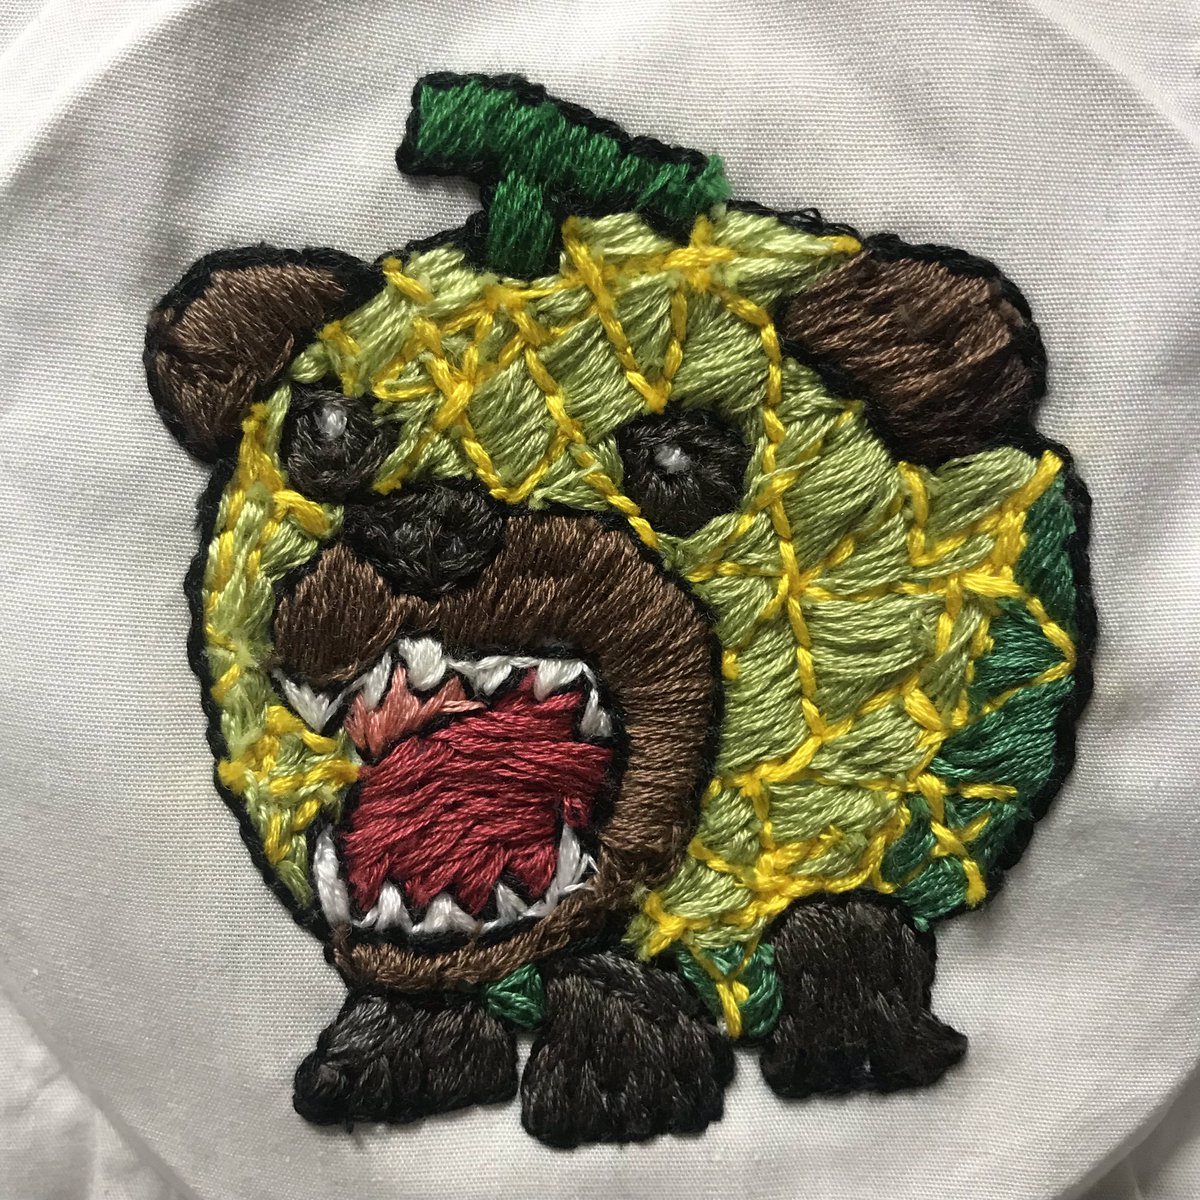 あみぴょん בטוויטר 刺繍 フリーステッチング メロン熊 北海道夕張市 全国的に怖いキャラで有名なメロン熊さん コロナウイルスがおさまったらまた皆んなを食べたいみたい リアルなのは怖すぎて作れなかった イラストベースで作りました